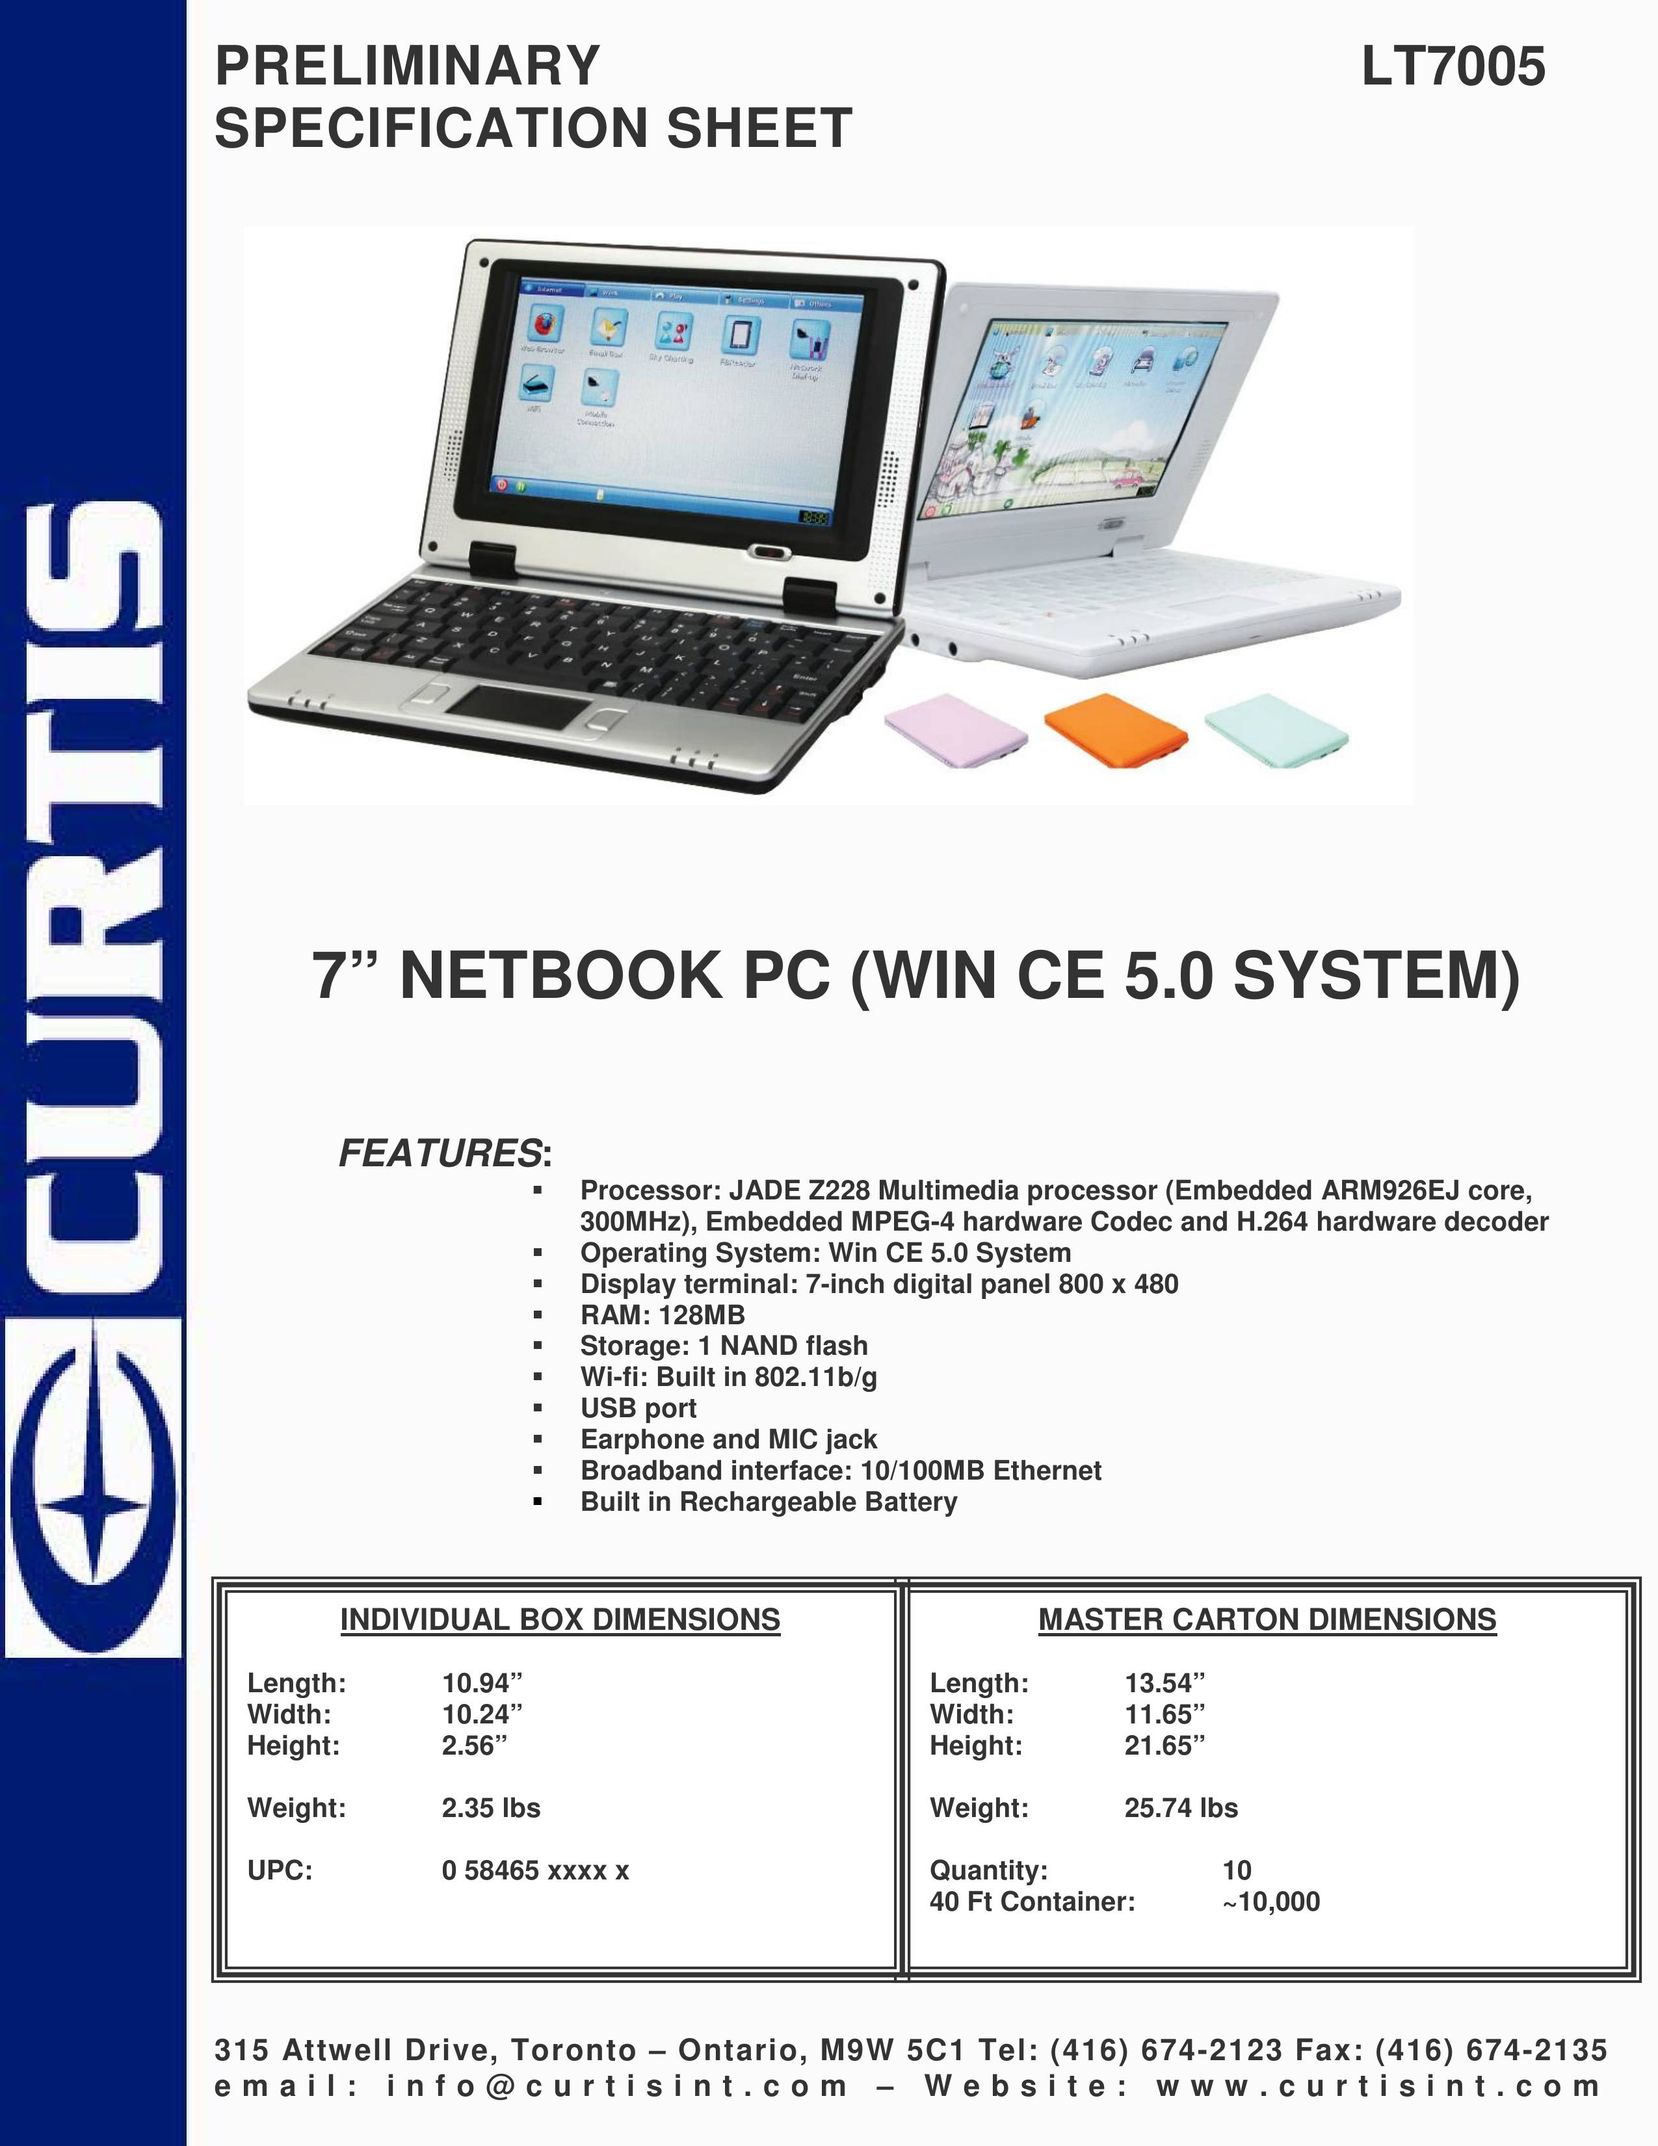 Curtis LT7005 Laptop User Manual